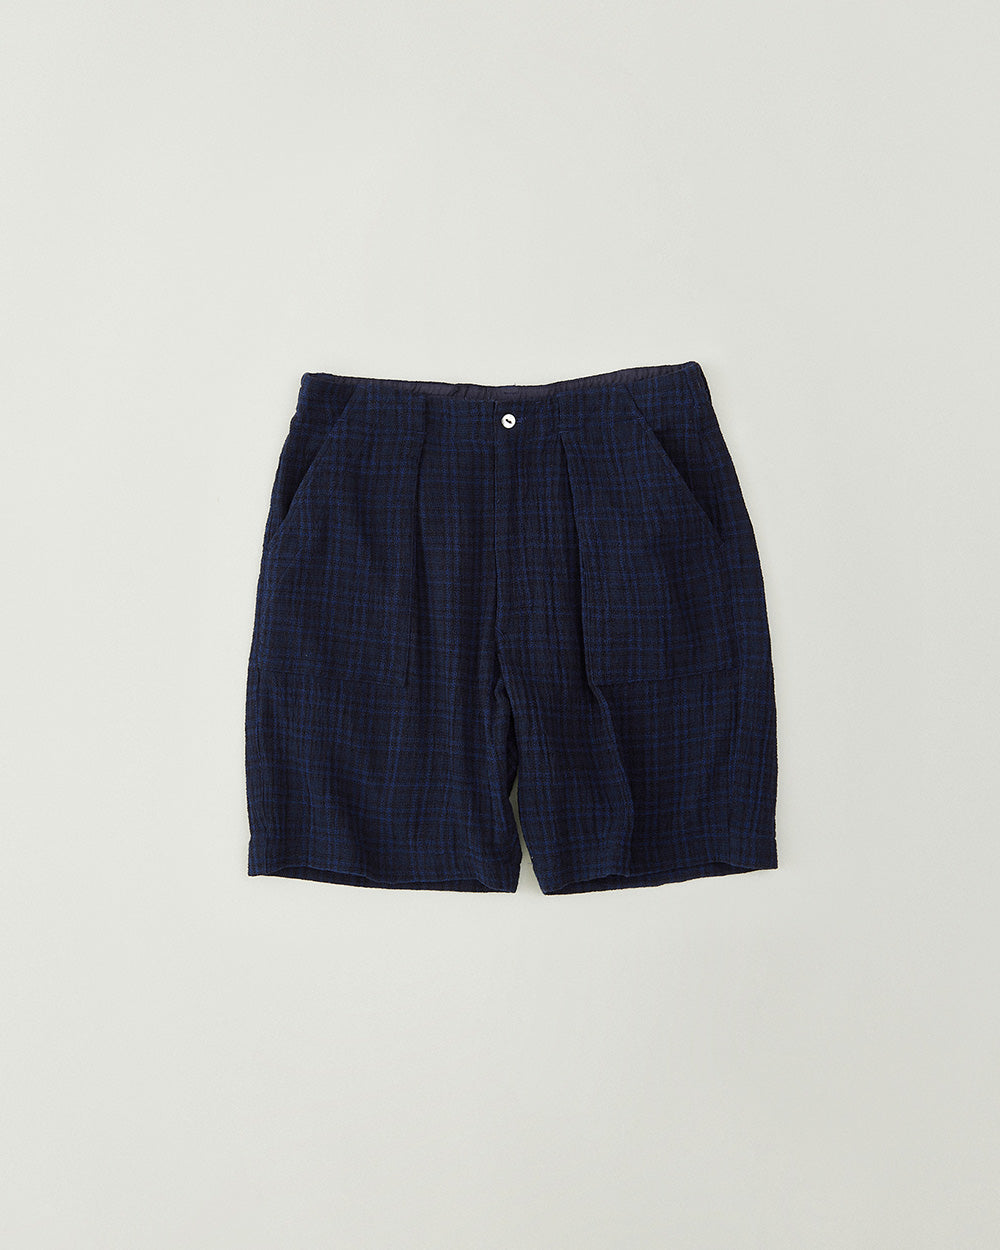 Panama Cloth Check Shorts